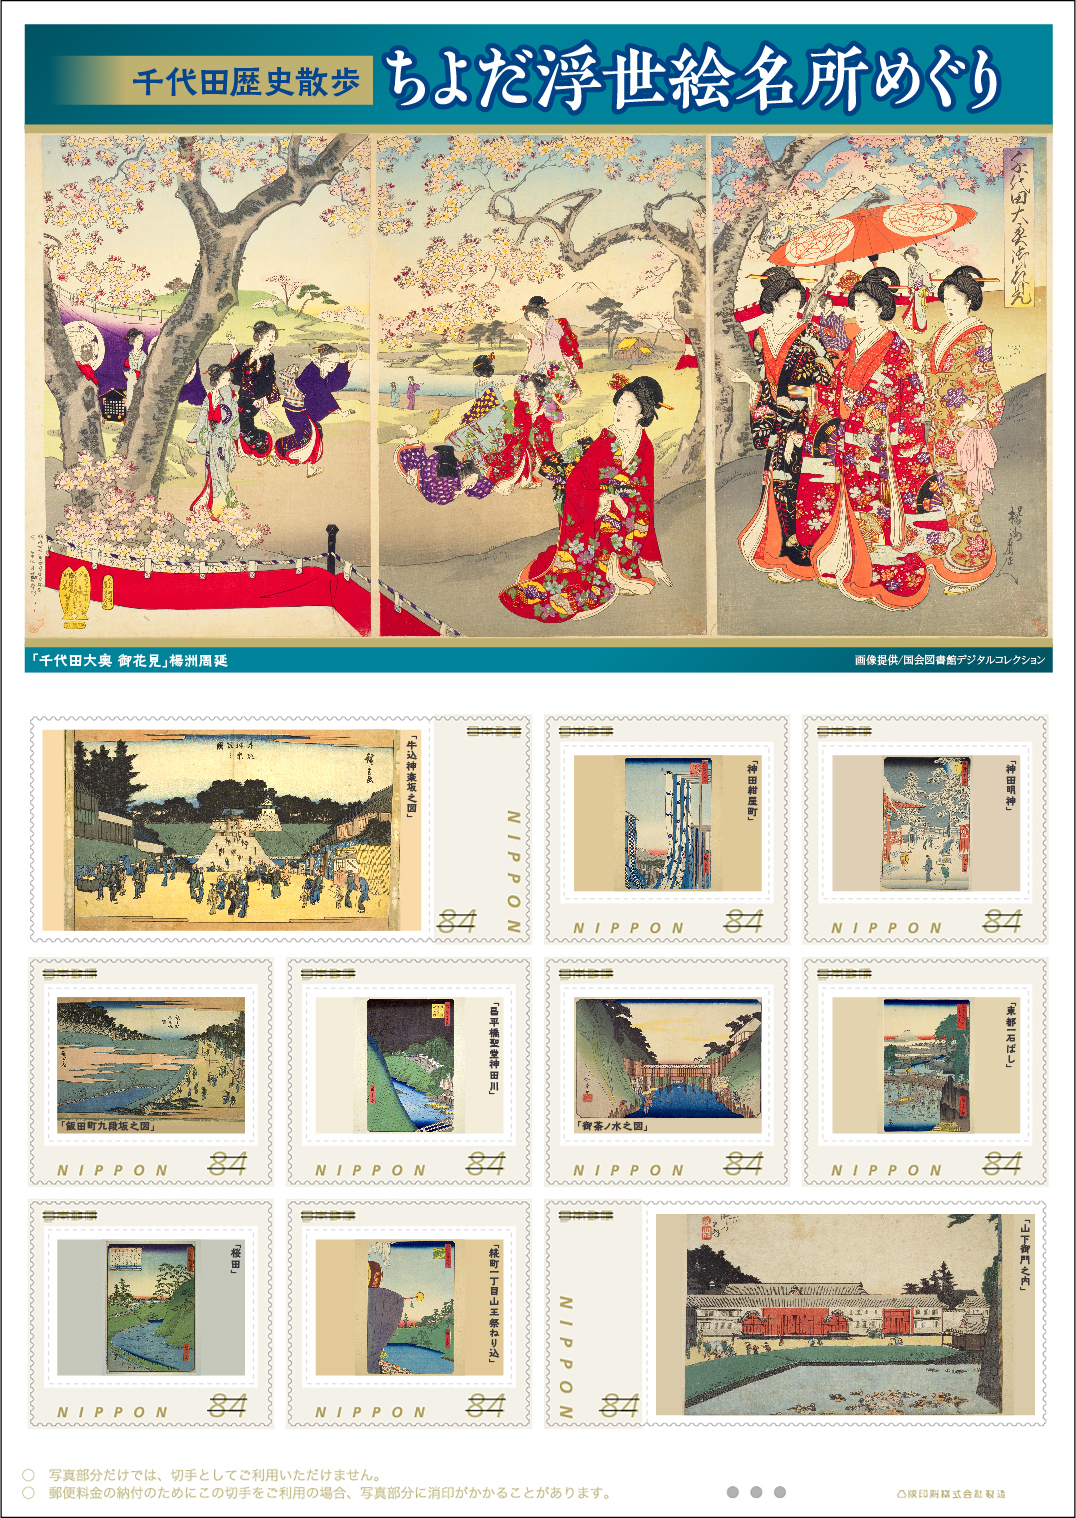 オリジナル フレーム切手セット「千代田歴史散歩「ちよだ浮世絵名所めぐり」」の販売開始